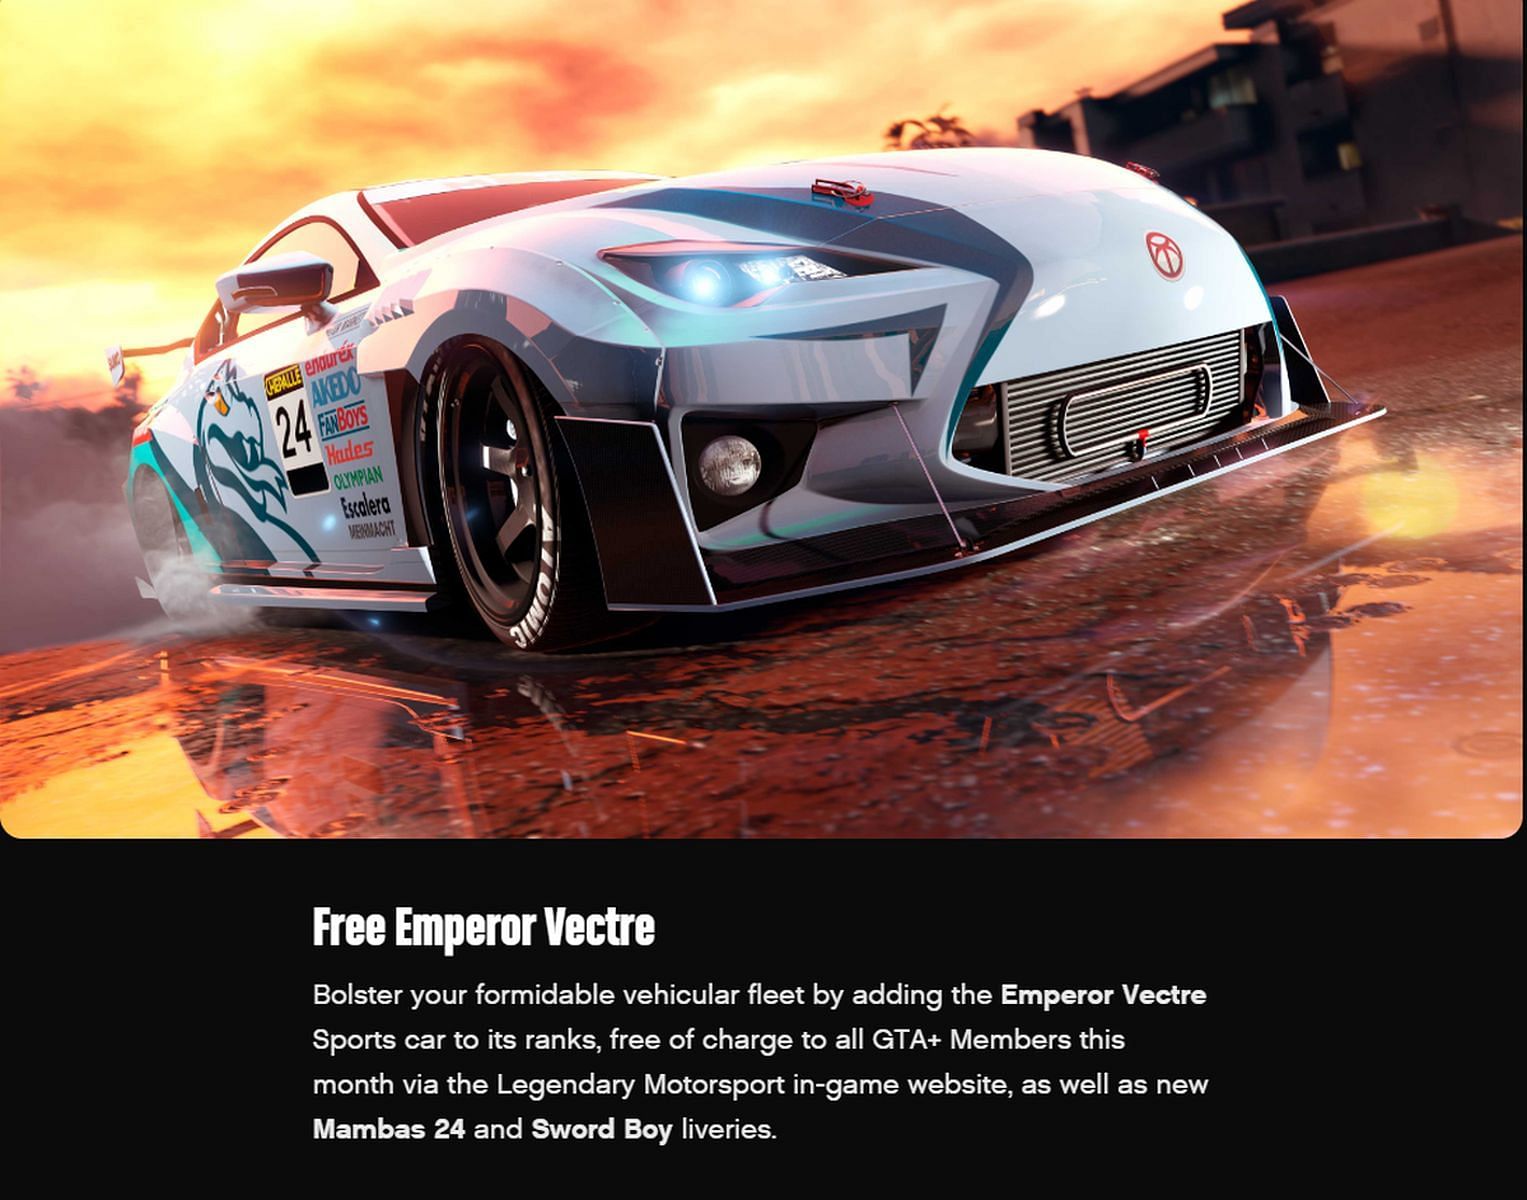 Rockstar Games calls it a &quot;Free Emperor Vectre&quot; (Image via Rockstar Games)